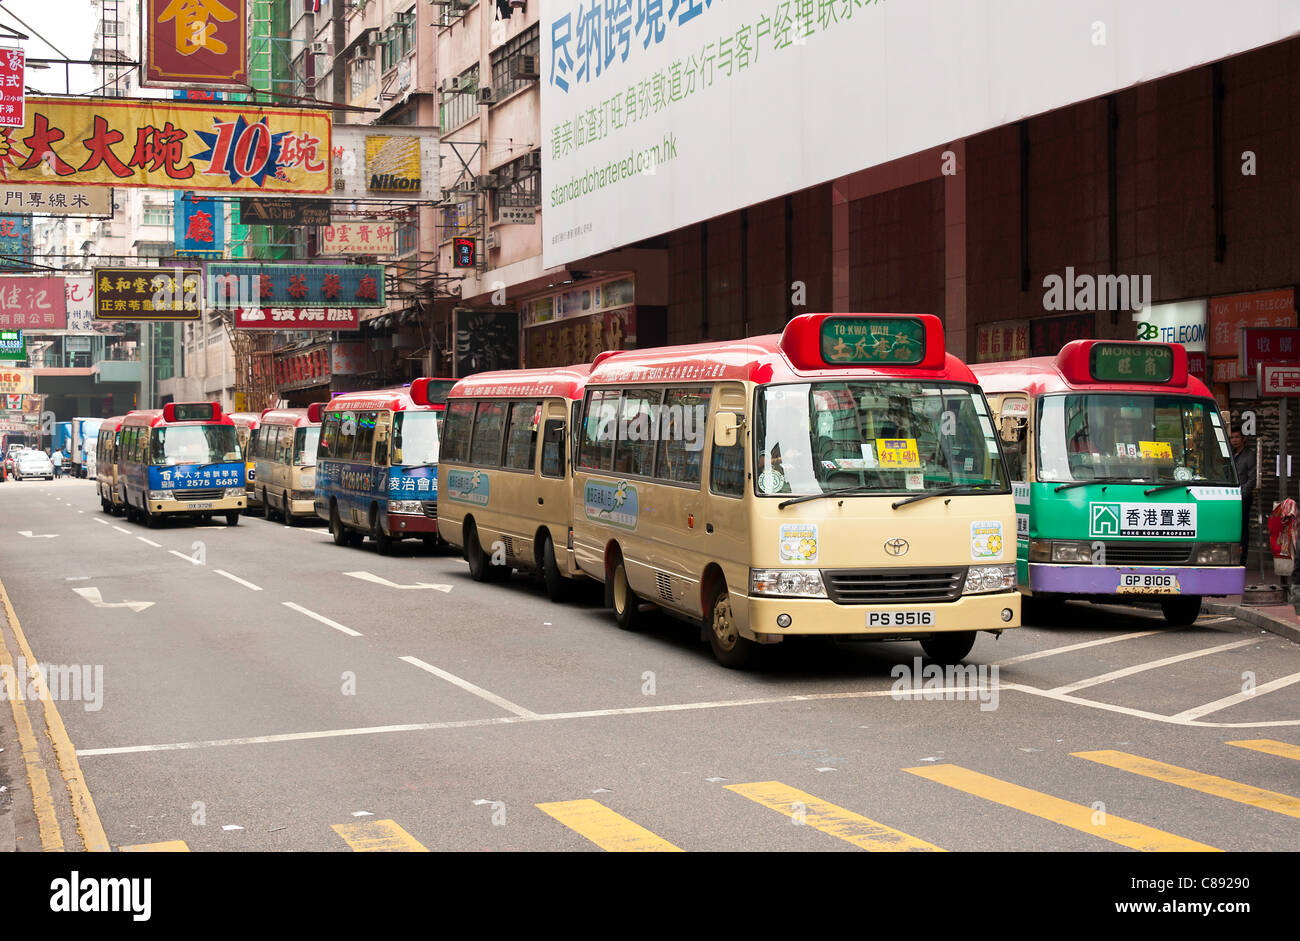 Seul les bus en bois devant les boutiques dans Tung Choi Street Kowloon Hong Kong Chine Asie Banque D'Images